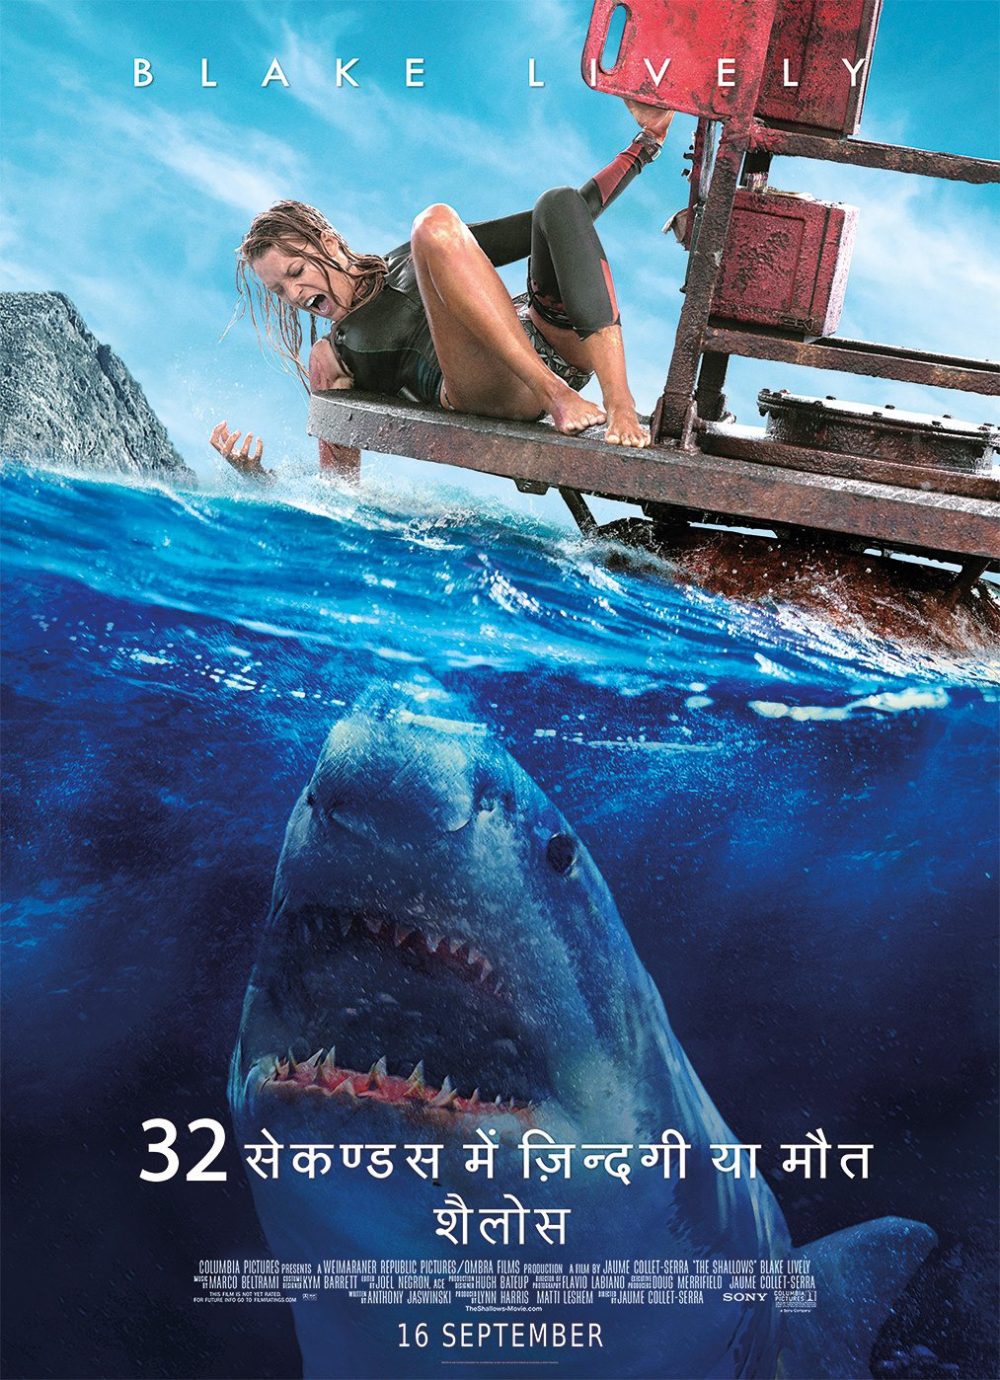 Phân tích các yếu tố hấp dẫn trong phim cá mập